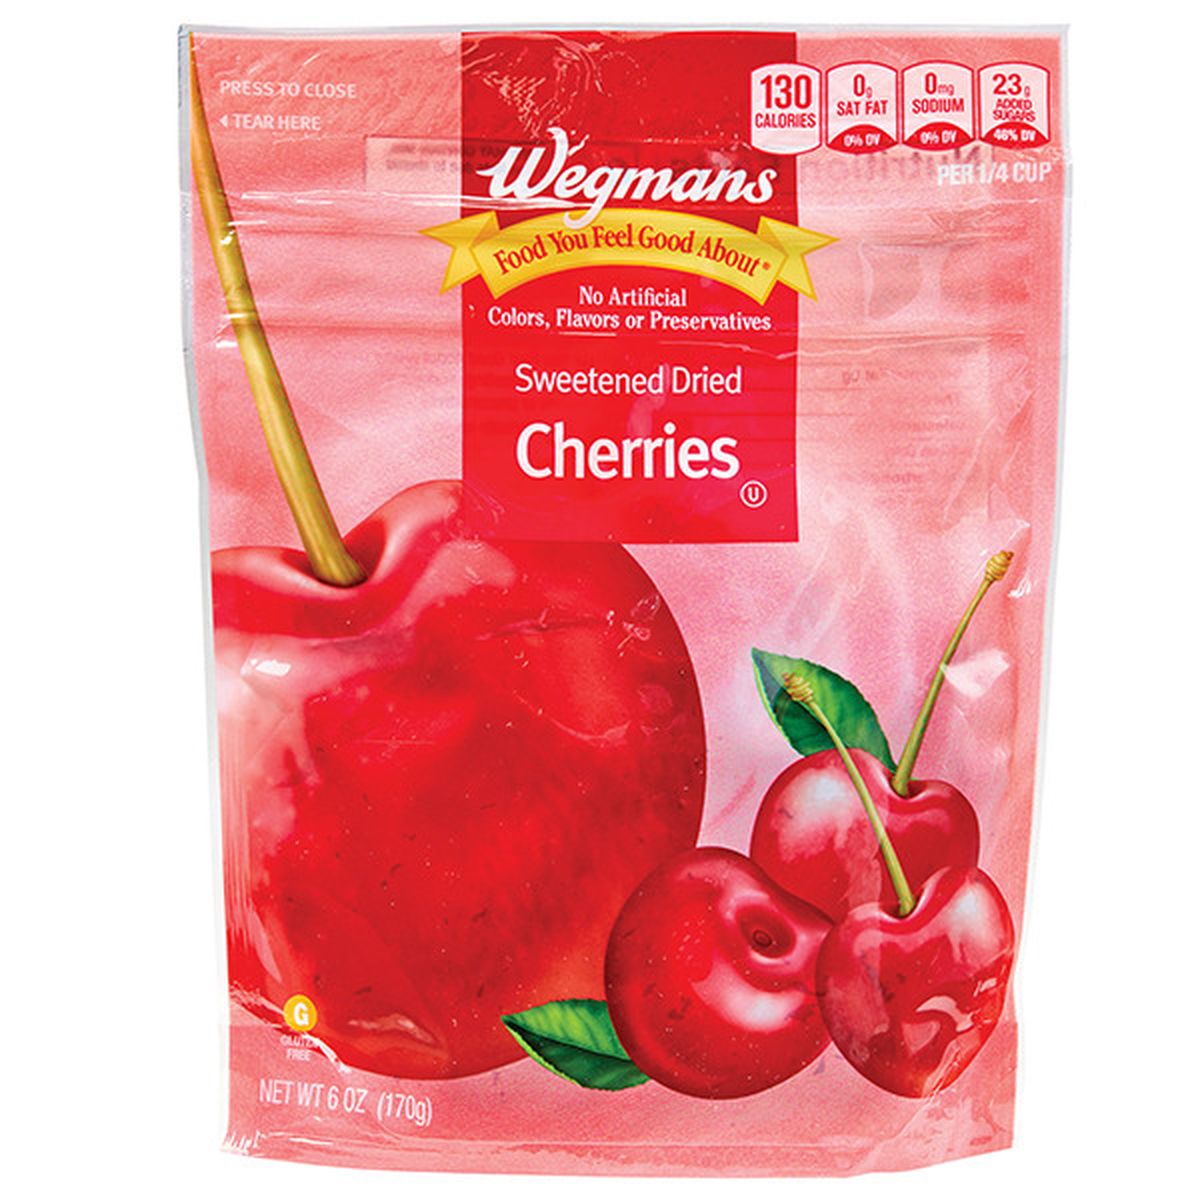 Calories in Wegmans Sweetened Dried Cherries